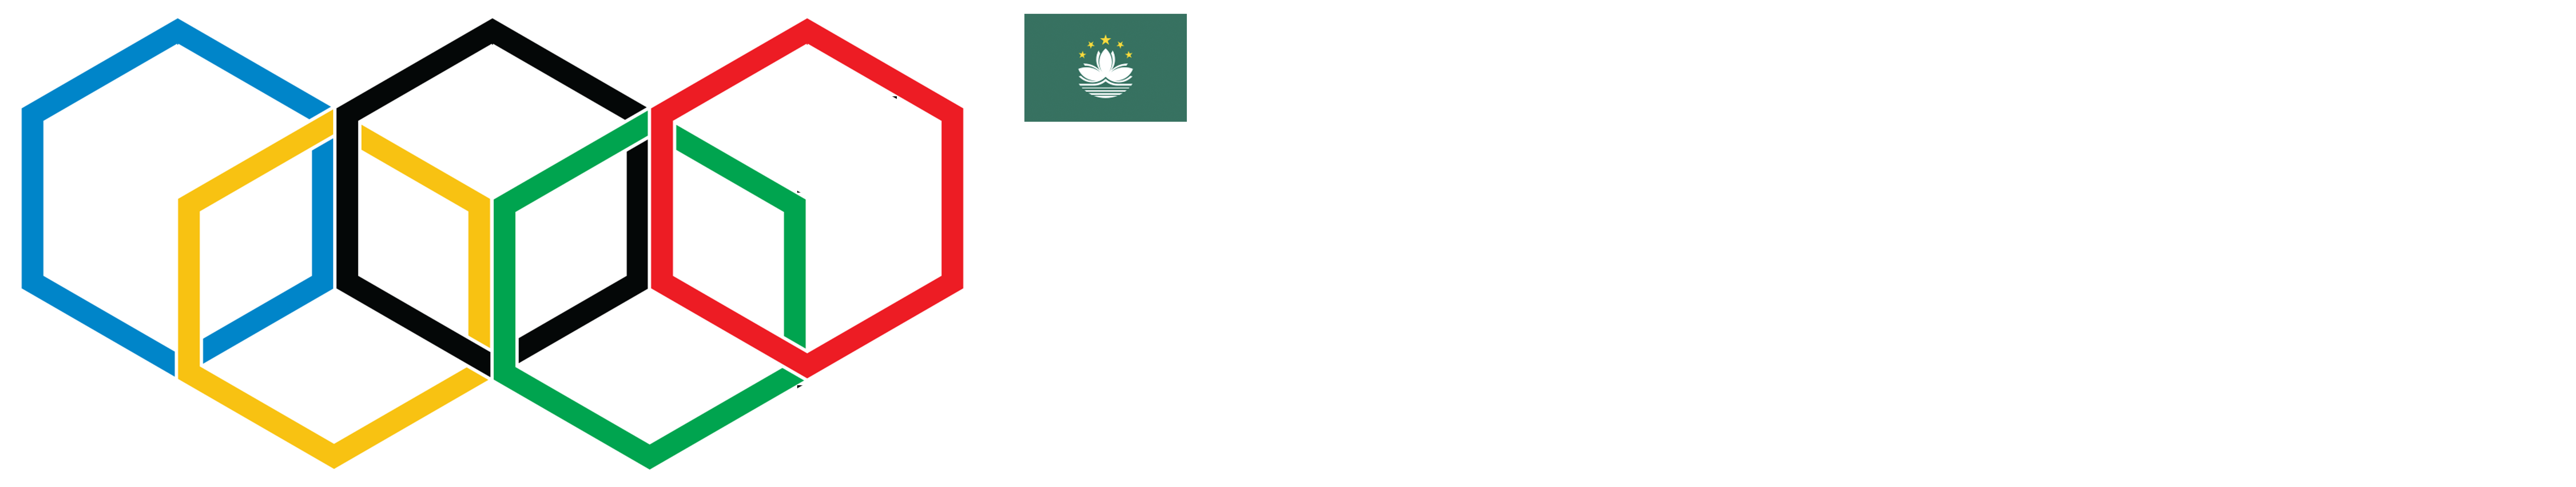 IBCOL: International Blockchain Olympiad